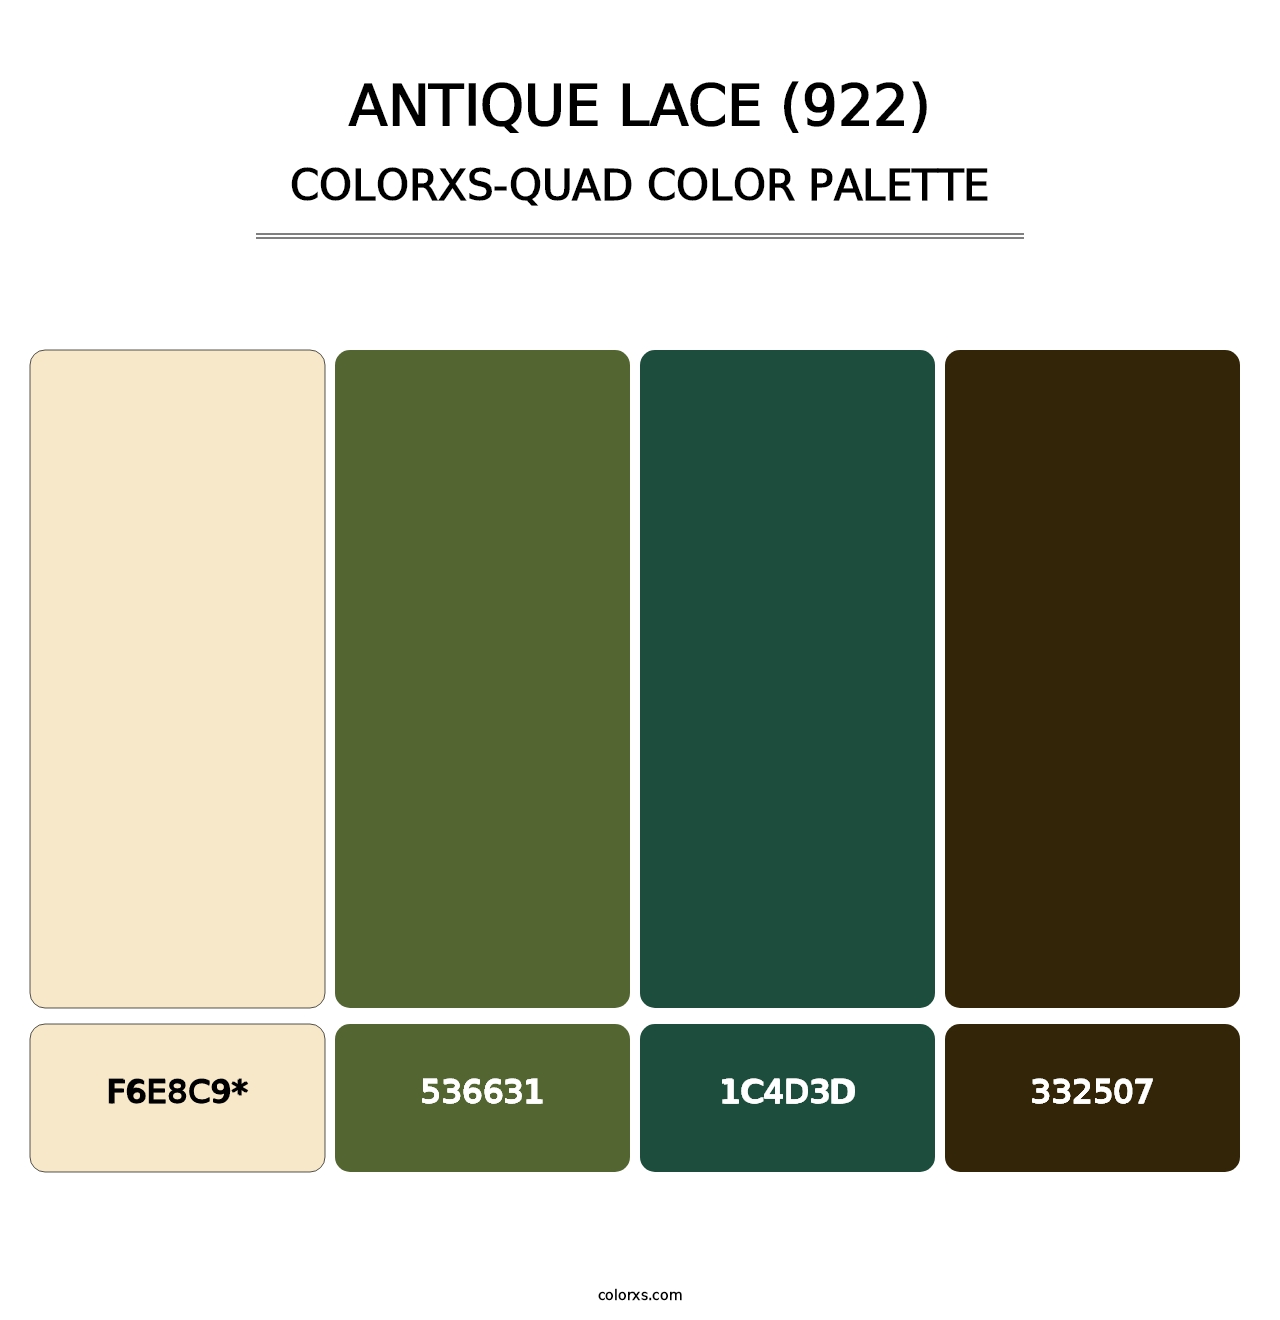 Antique Lace (922) - Colorxs Quad Palette